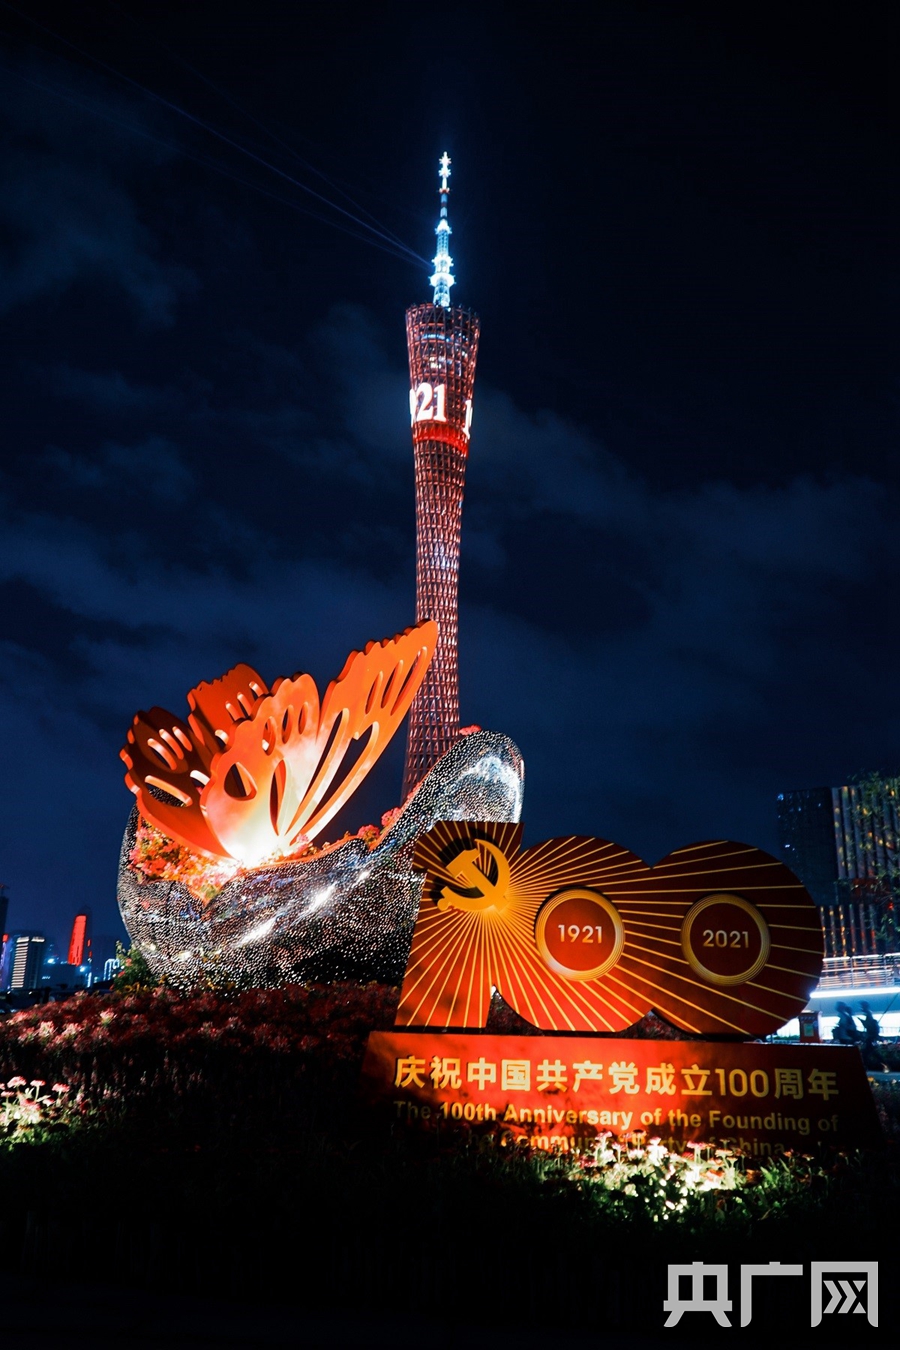 初心版面采用红船元素作为主景,搭配广州的标志性建筑,与历史对话